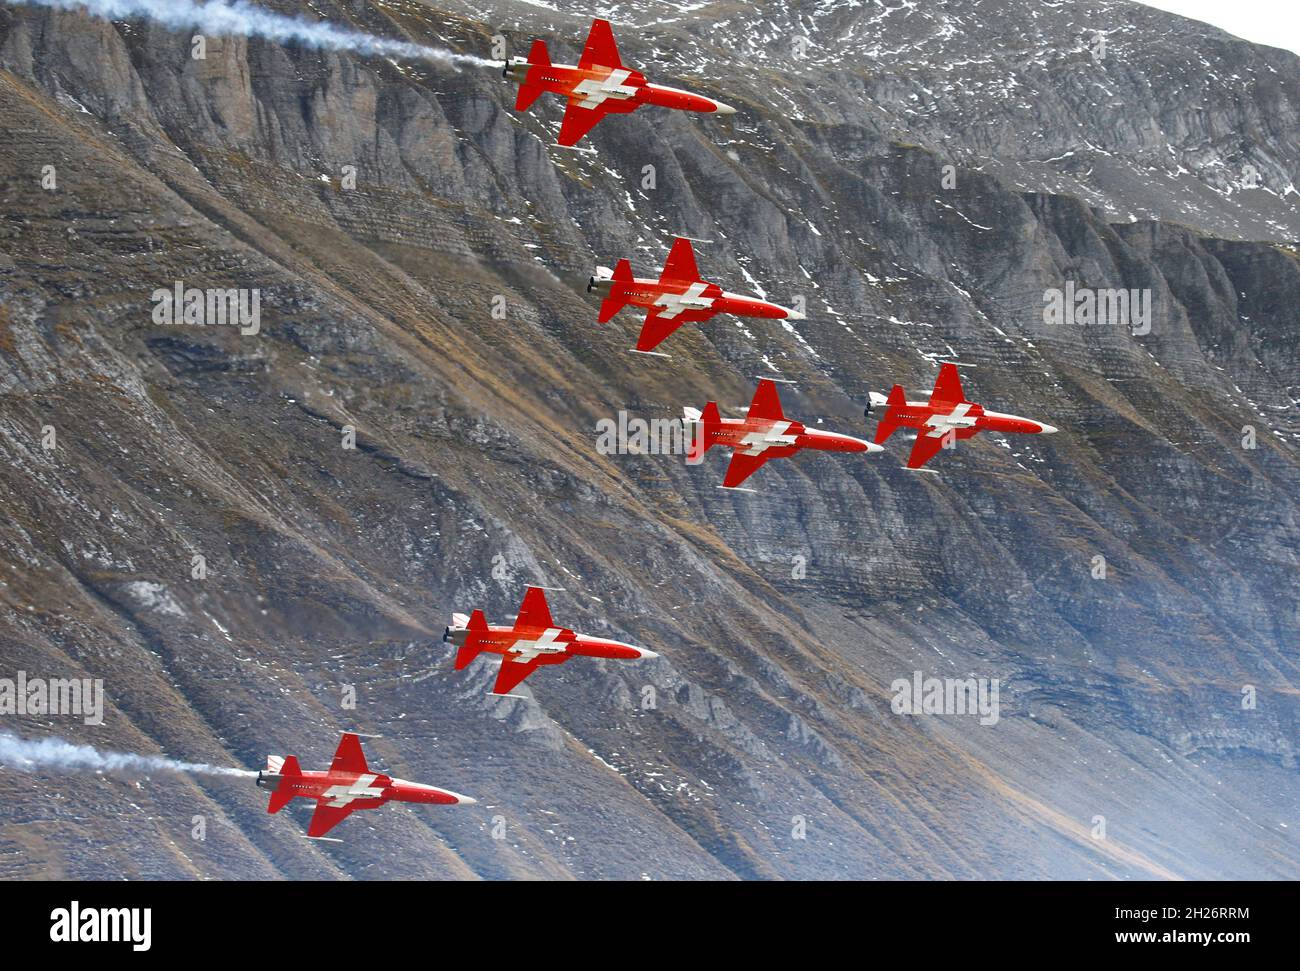 Piloten der Patrouille Suisse treten in ihren Northrop F-5E Tiger II  Kampfflugzeugen während einer Flugdemonstration der Schweizer Luftwaffe  über der Axalp im Berner Oberland, Schweiz, am 20. Oktober 2021 auf.  REUTERS/Arnd Wiegmann